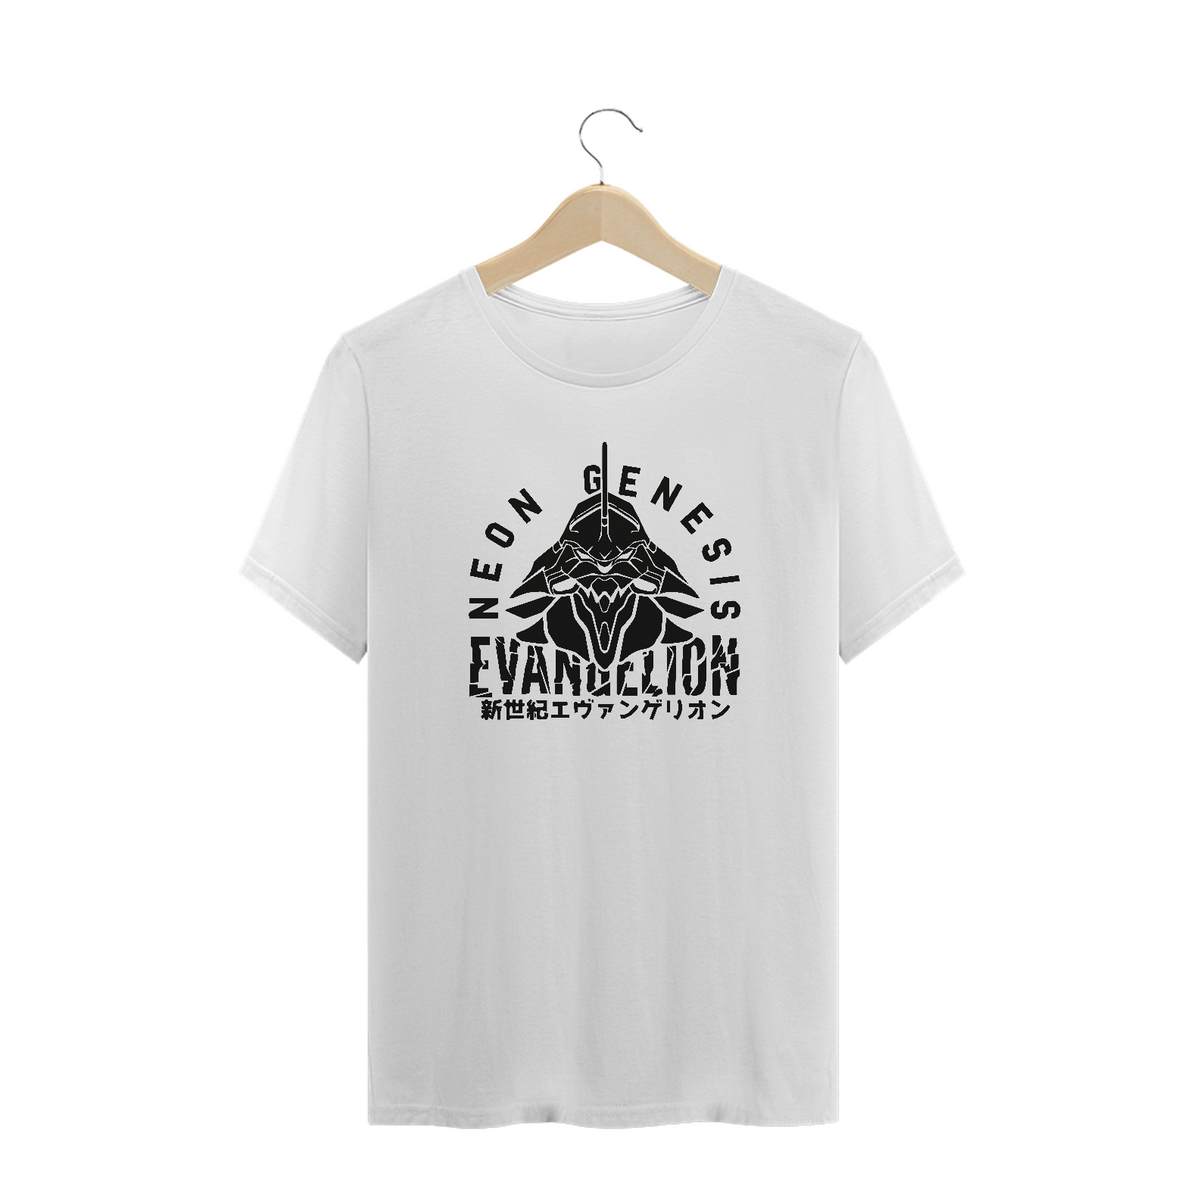 Nome do produto: Camisa Evangelion VIII